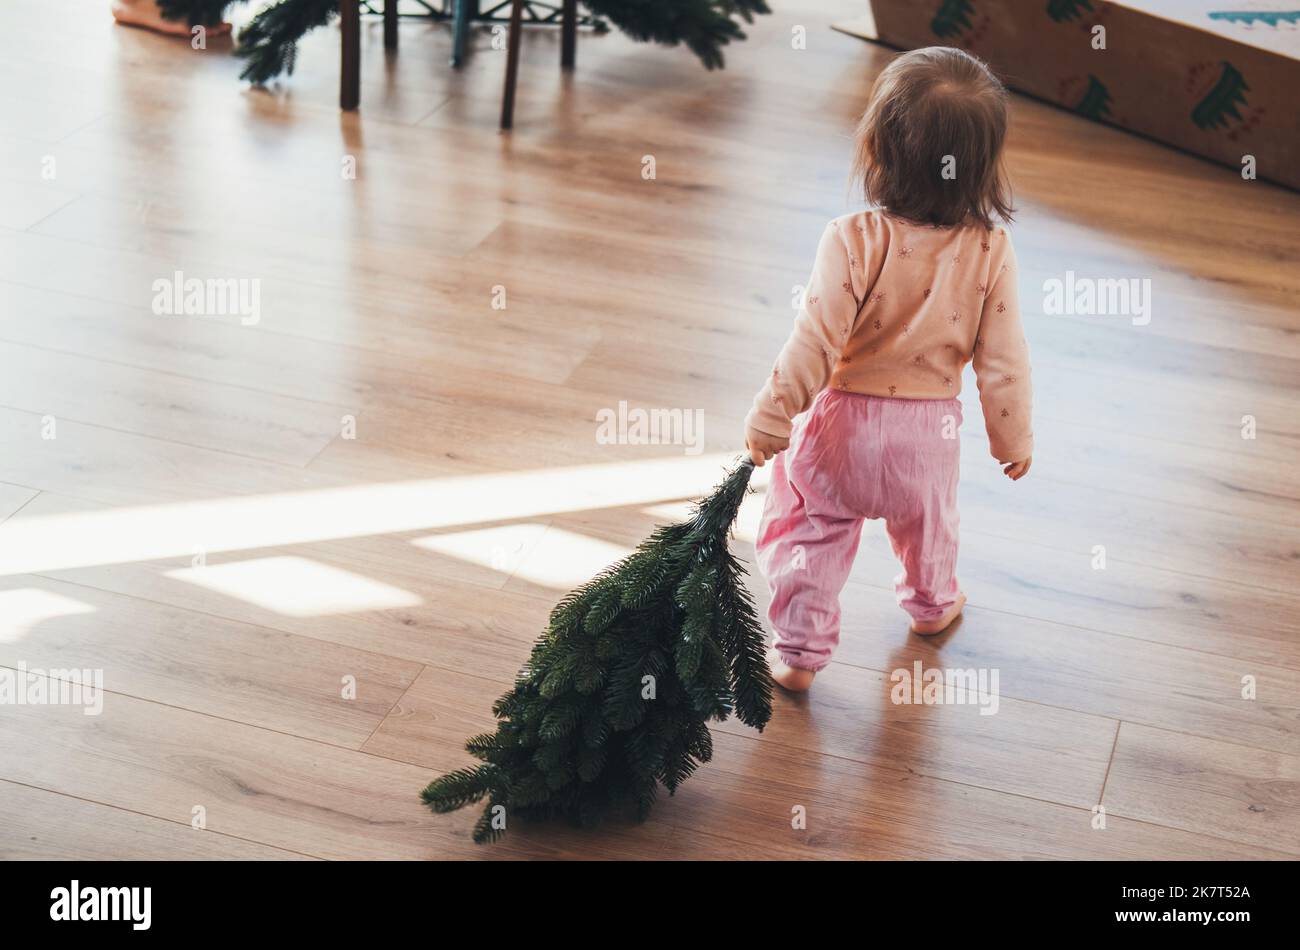 Rückansicht eines kleinen Mädchens, das einen künstlichen Christbaumzweig zu ihrer Mutter trägt, die den Baum zusammenstellt. Gemütliche festliche Atmosphäre. Warten auf Stockfoto